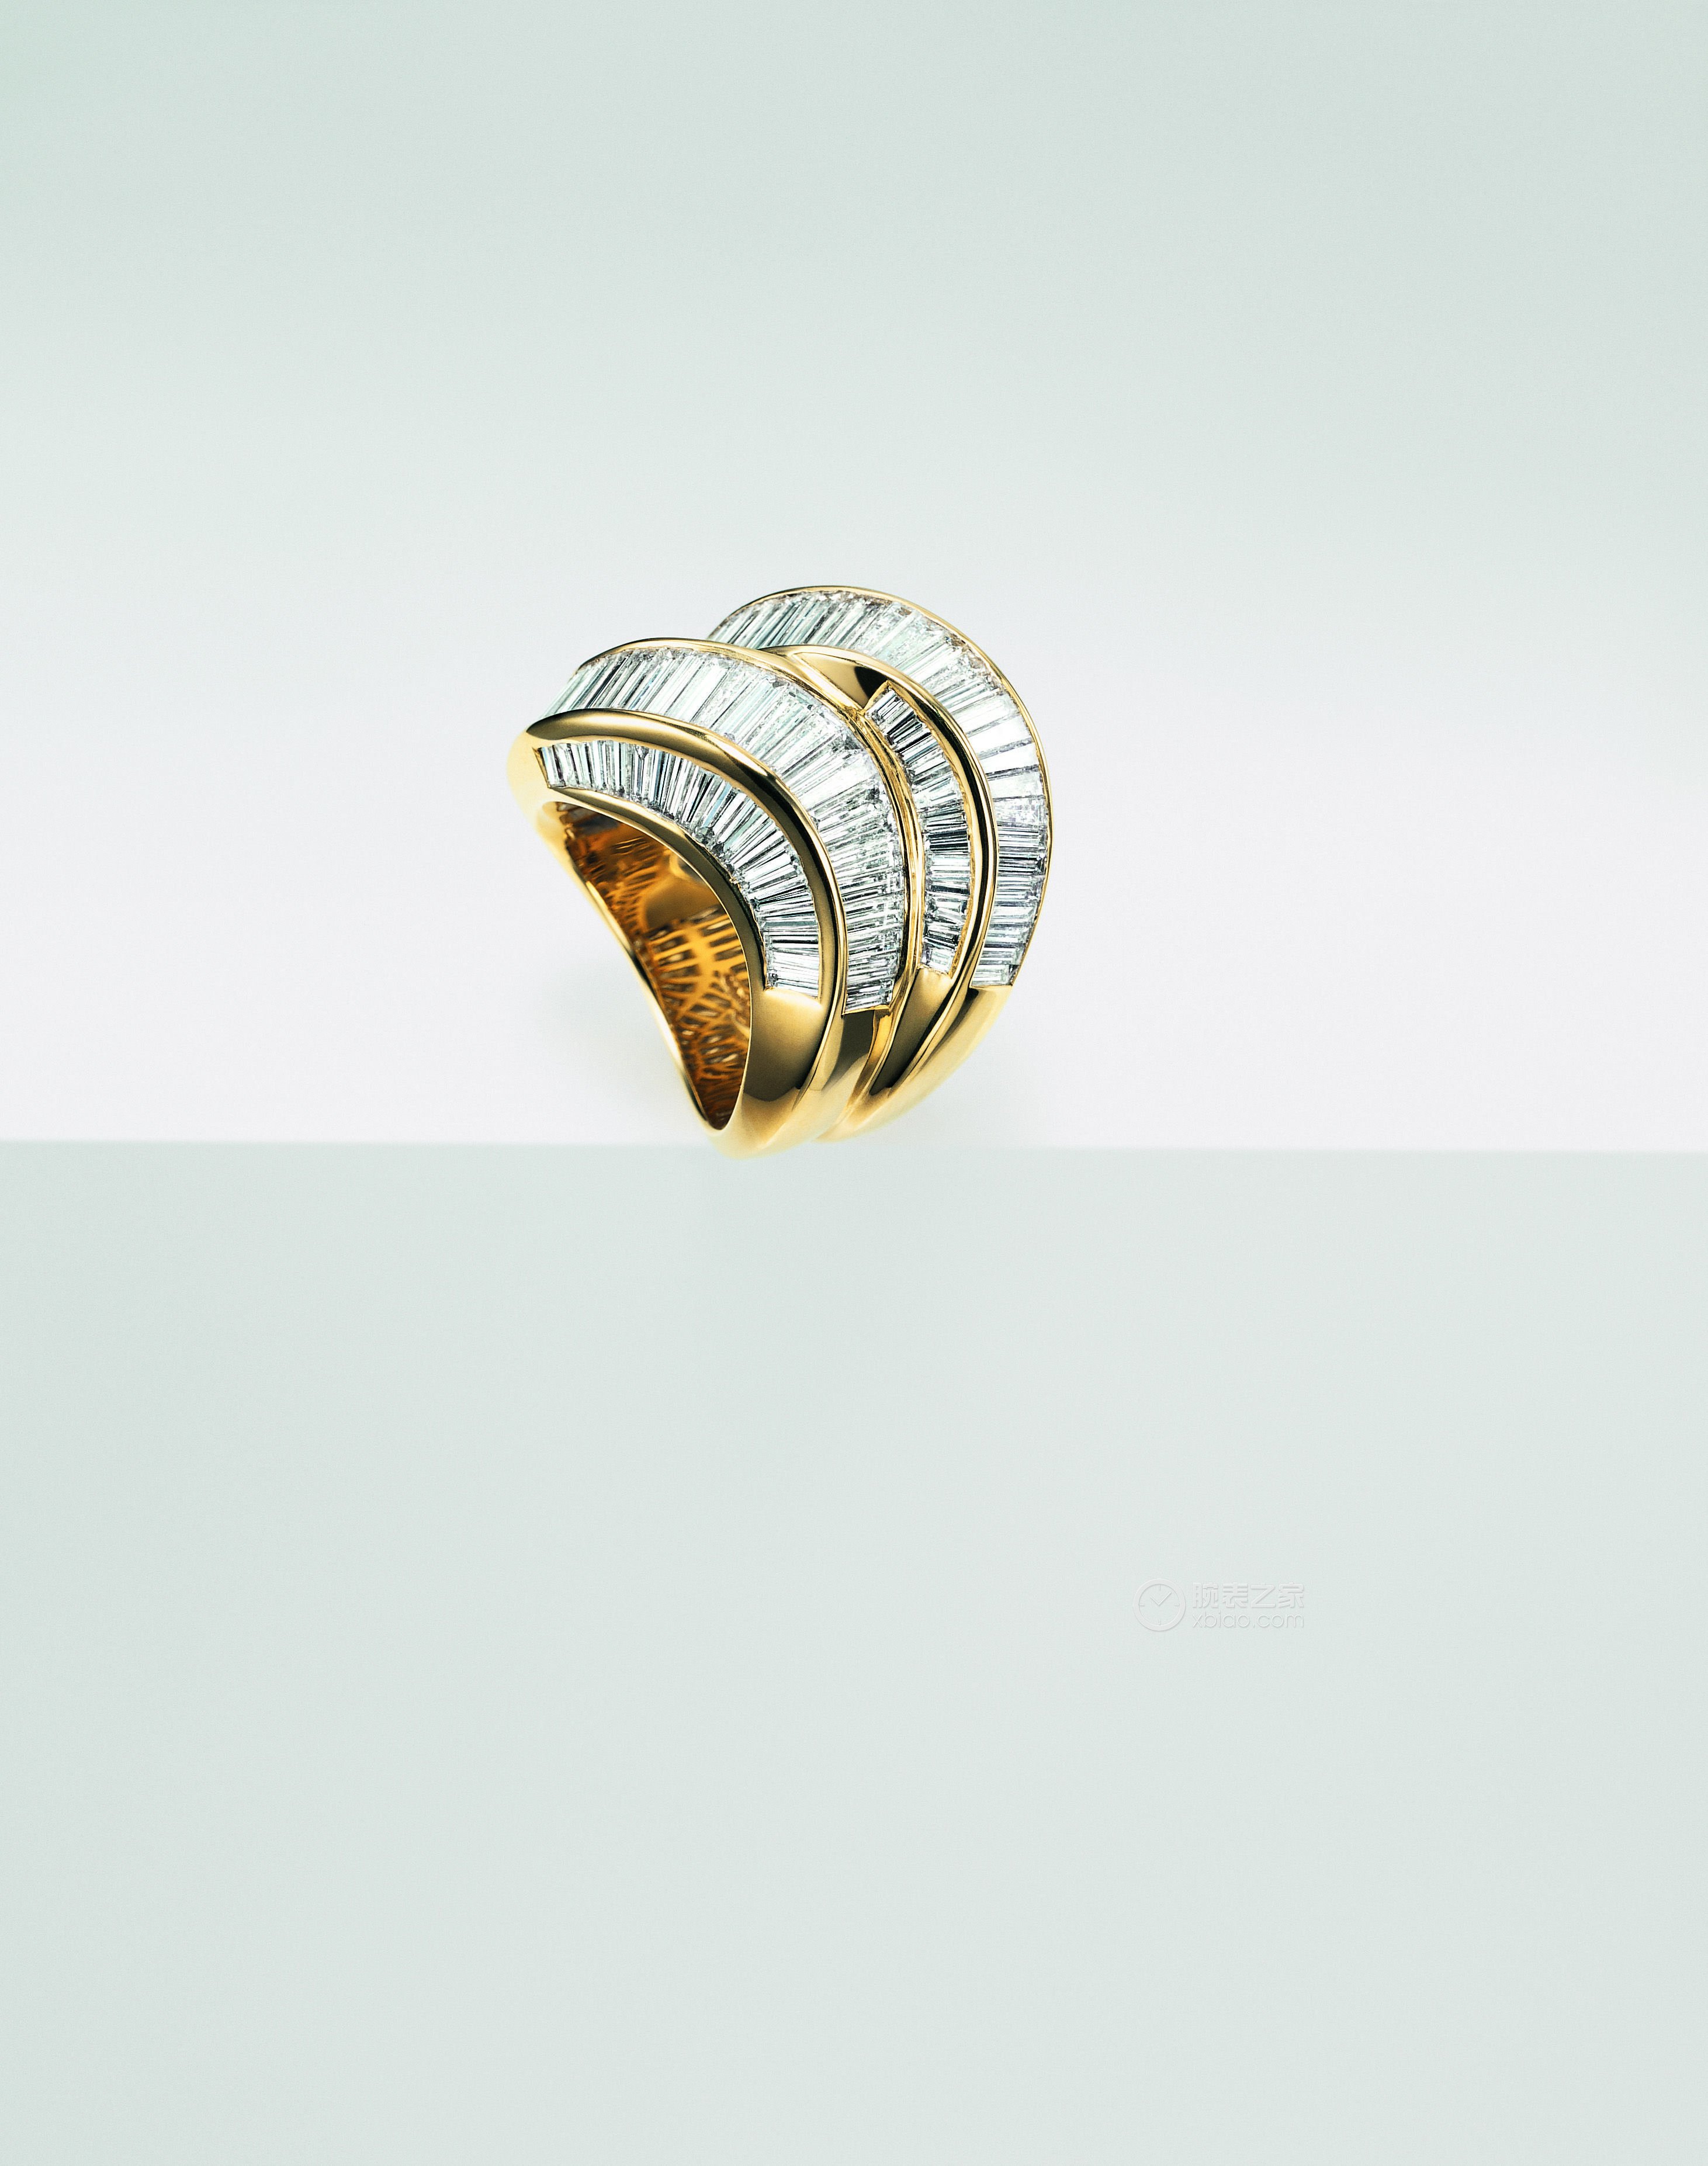 玳美雅国际获奖作品TWINS戒指（1996年获奖）戒指